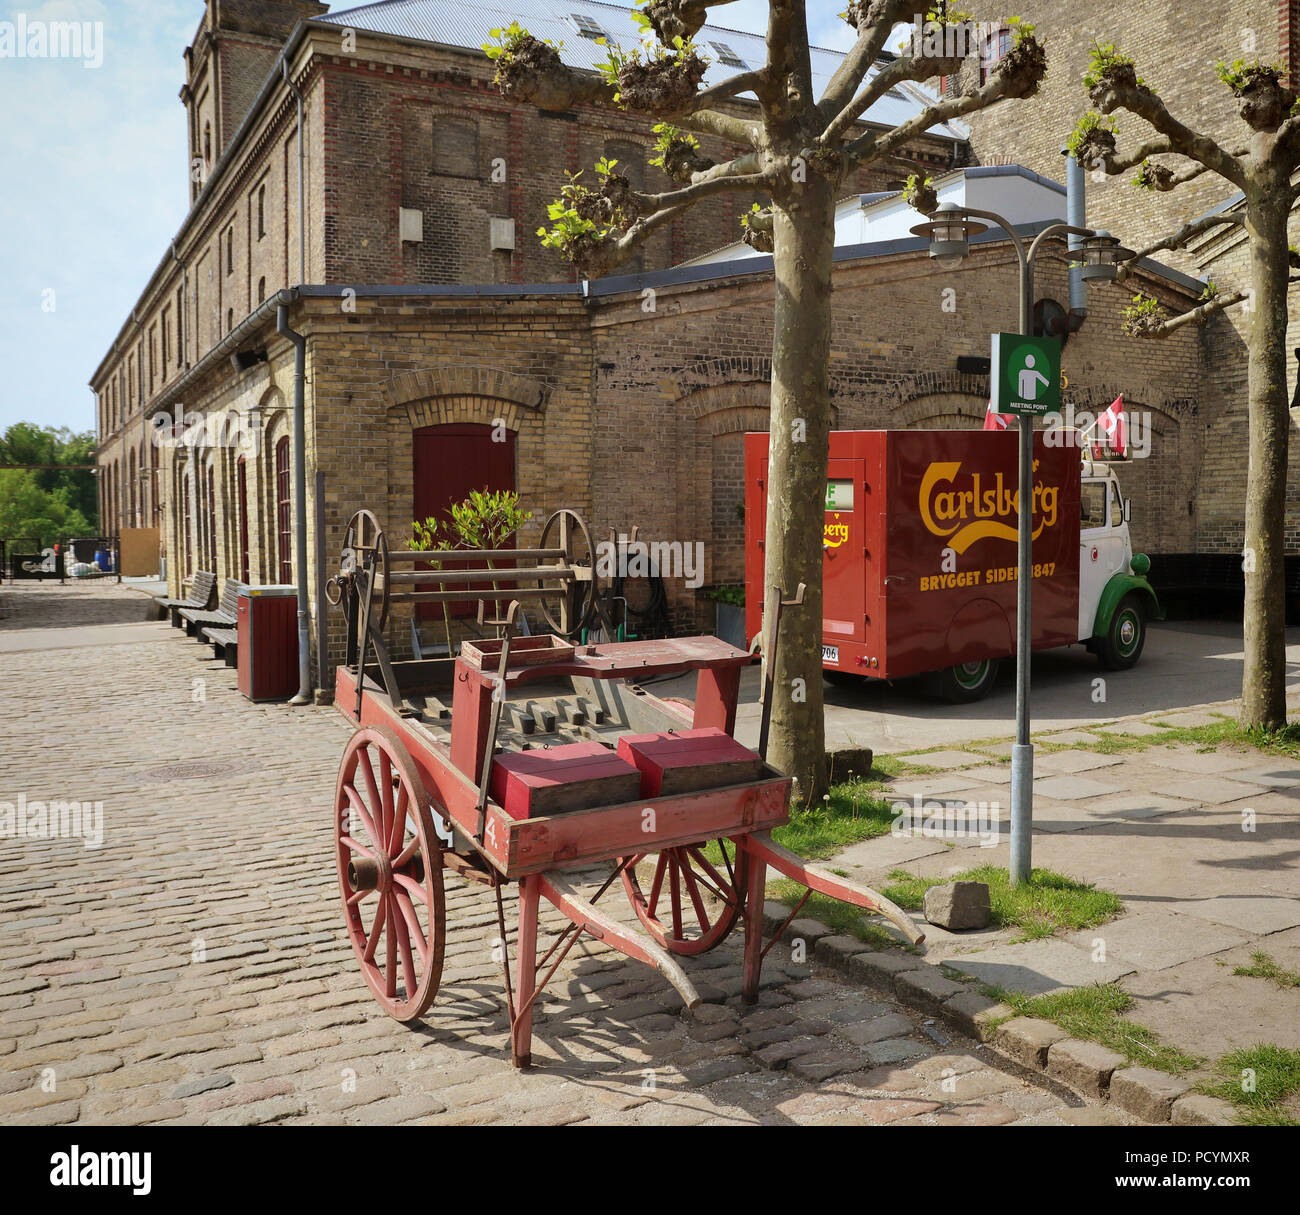 COPENHAGEN, Danimarca - 18 maggio 2018 il cortile della vecchia fabbrica di birra Carlsberg a Copenhagen con un vecchio carrello in esposizione Foto Stock